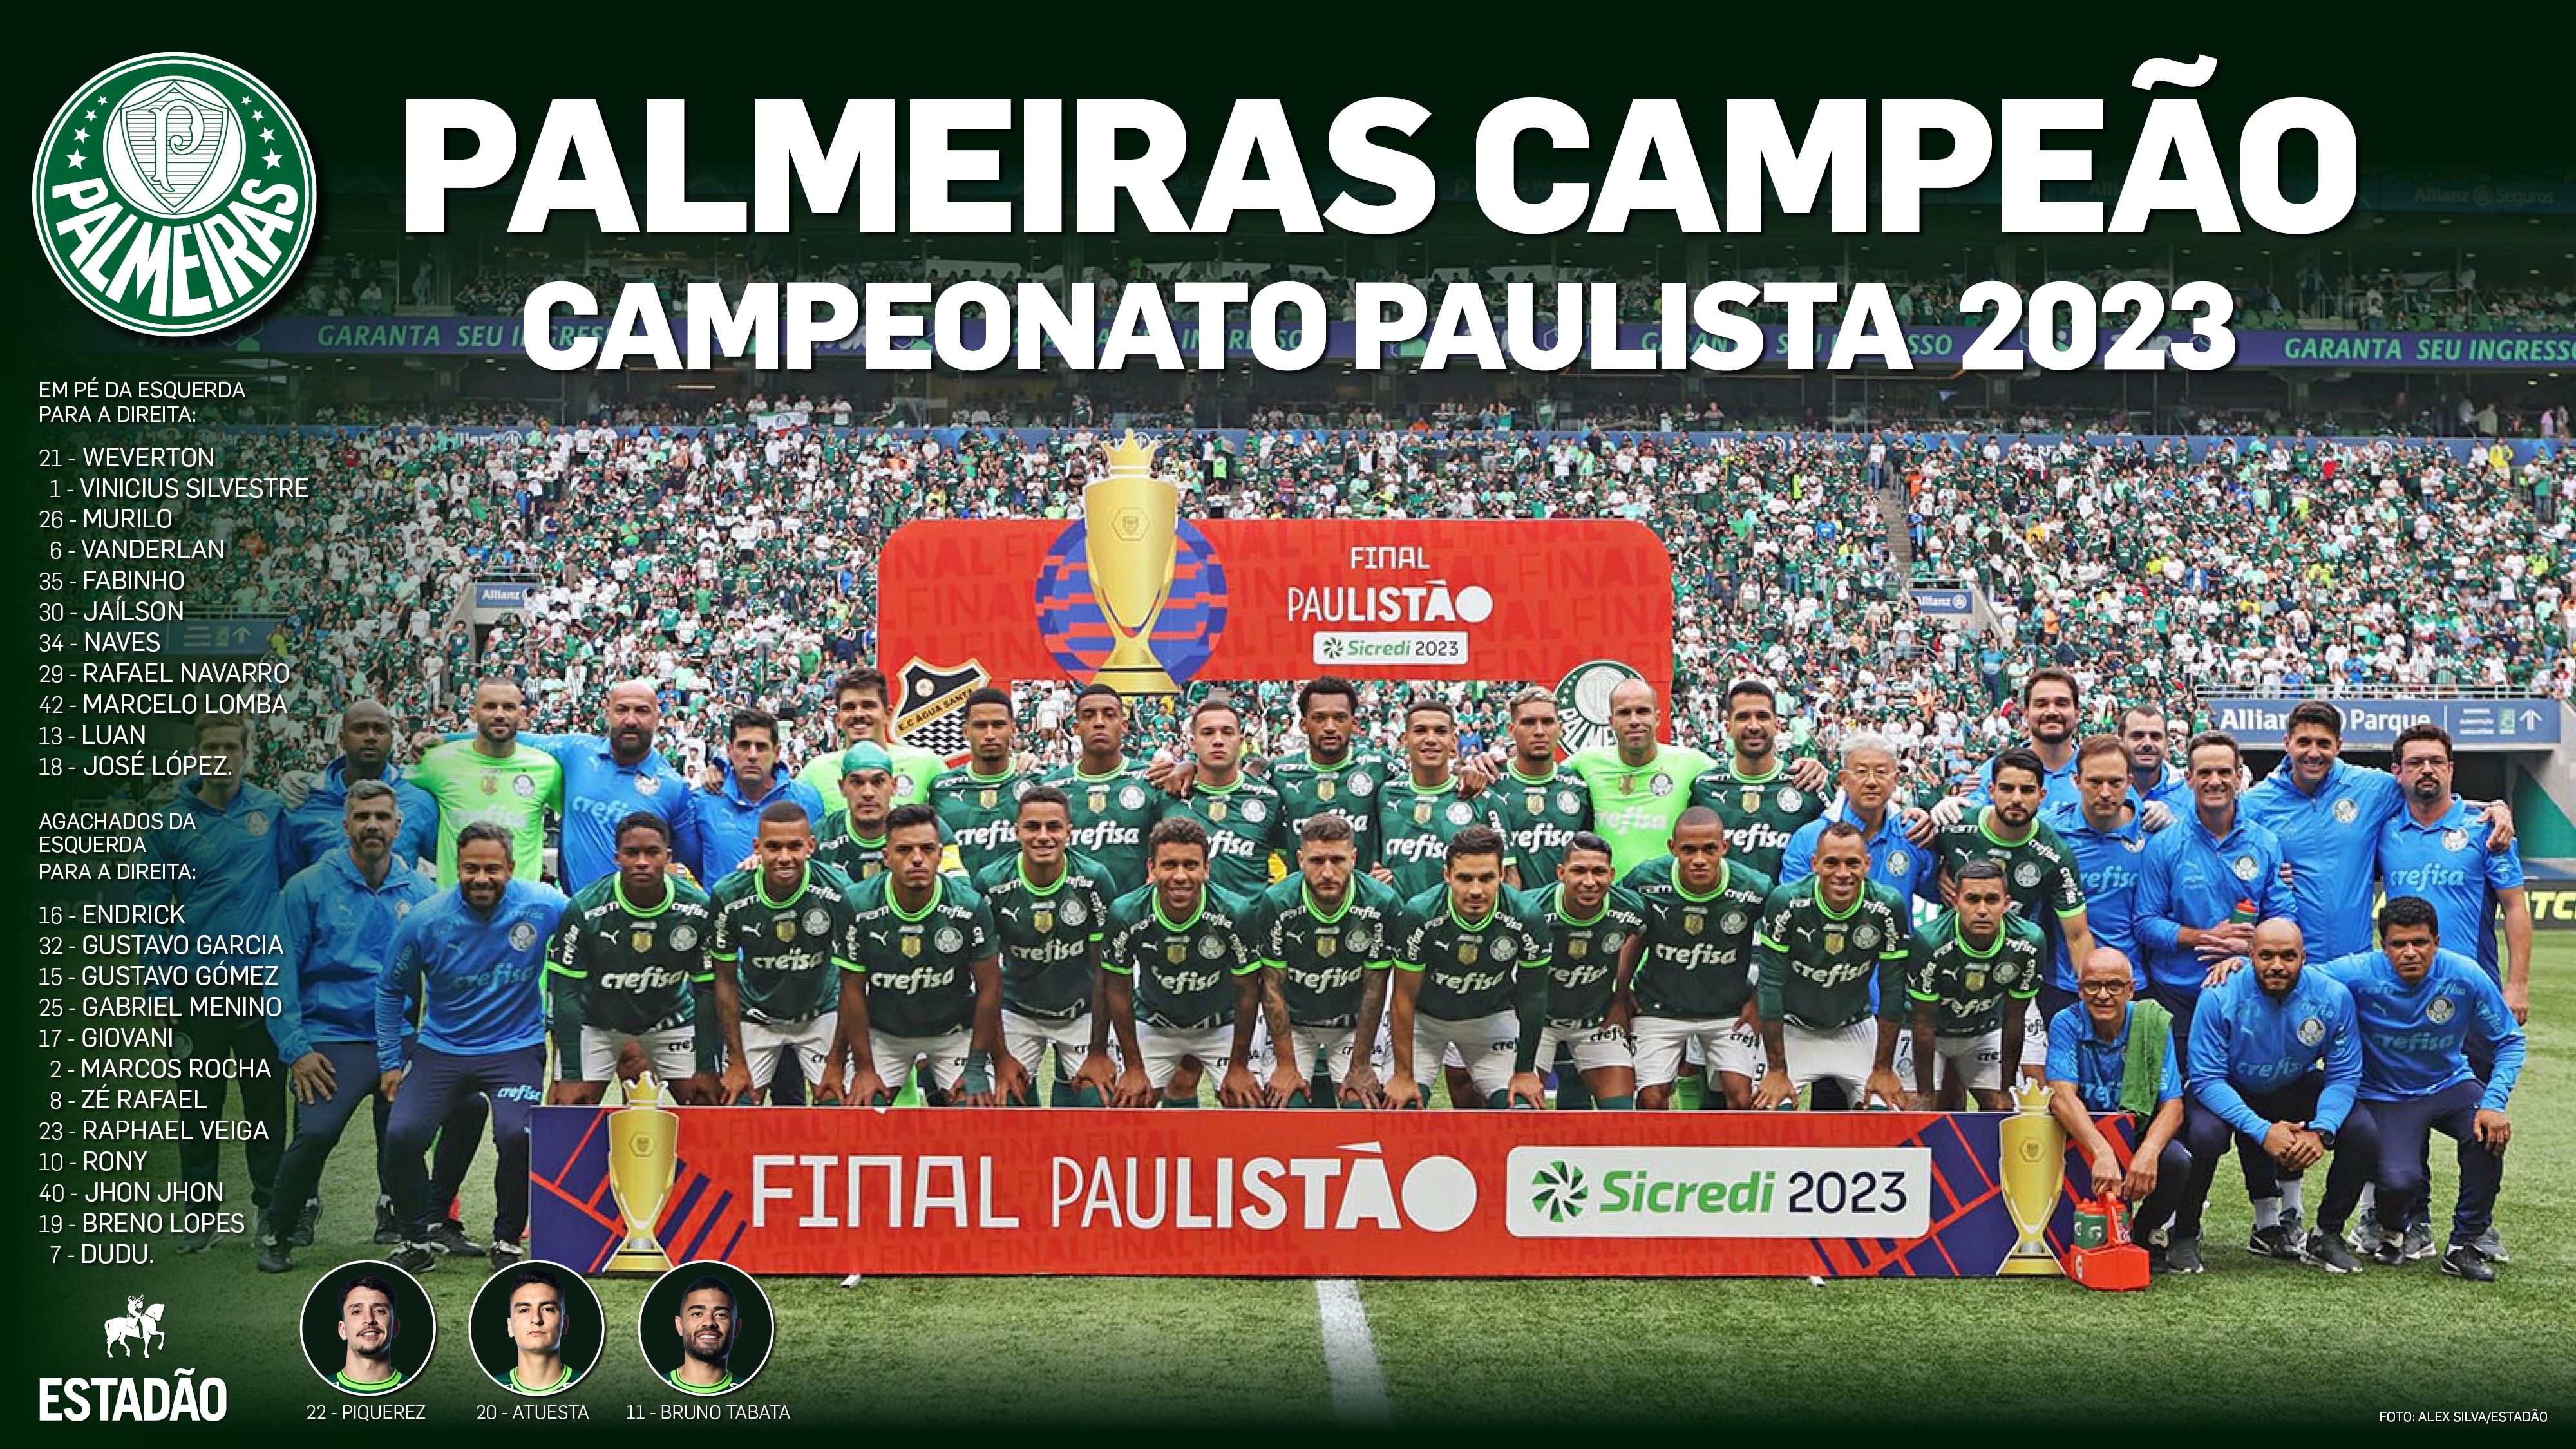 Baixe o pôster do Palmeiras campeão paulista de 2022 - 03/04/2022 - Esporte  - Folha